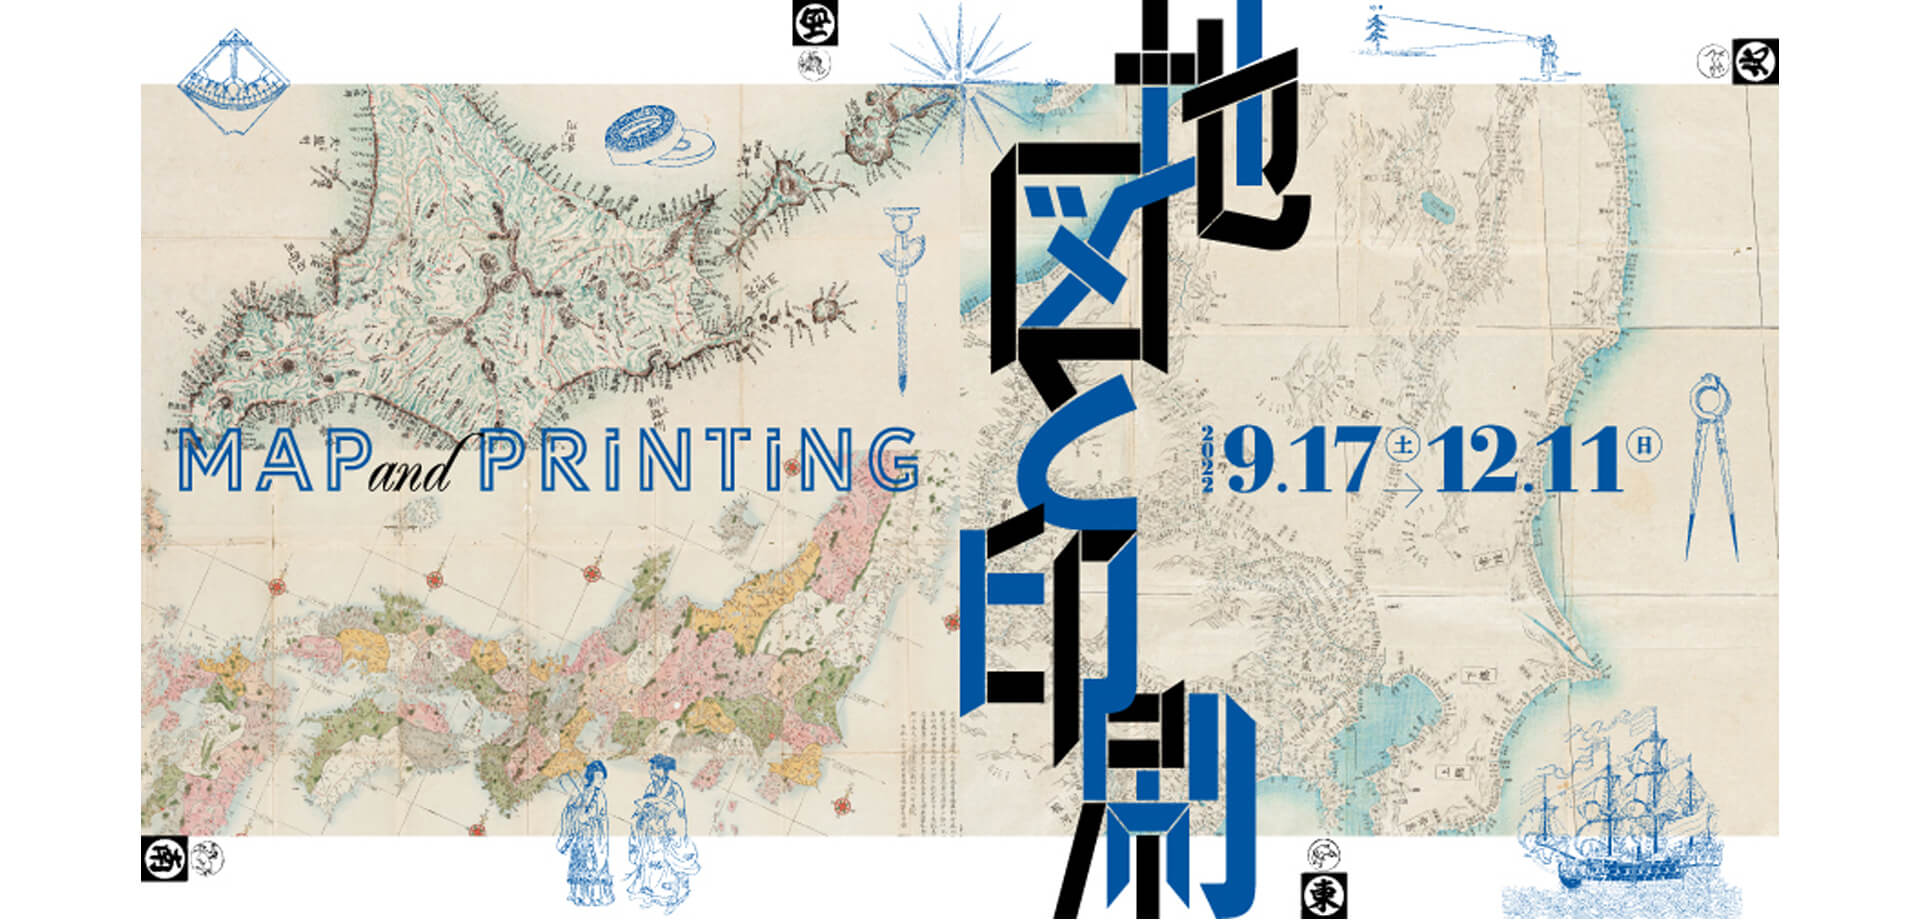 凸版印刷 印刷博物館 企画展「地図と印刷」